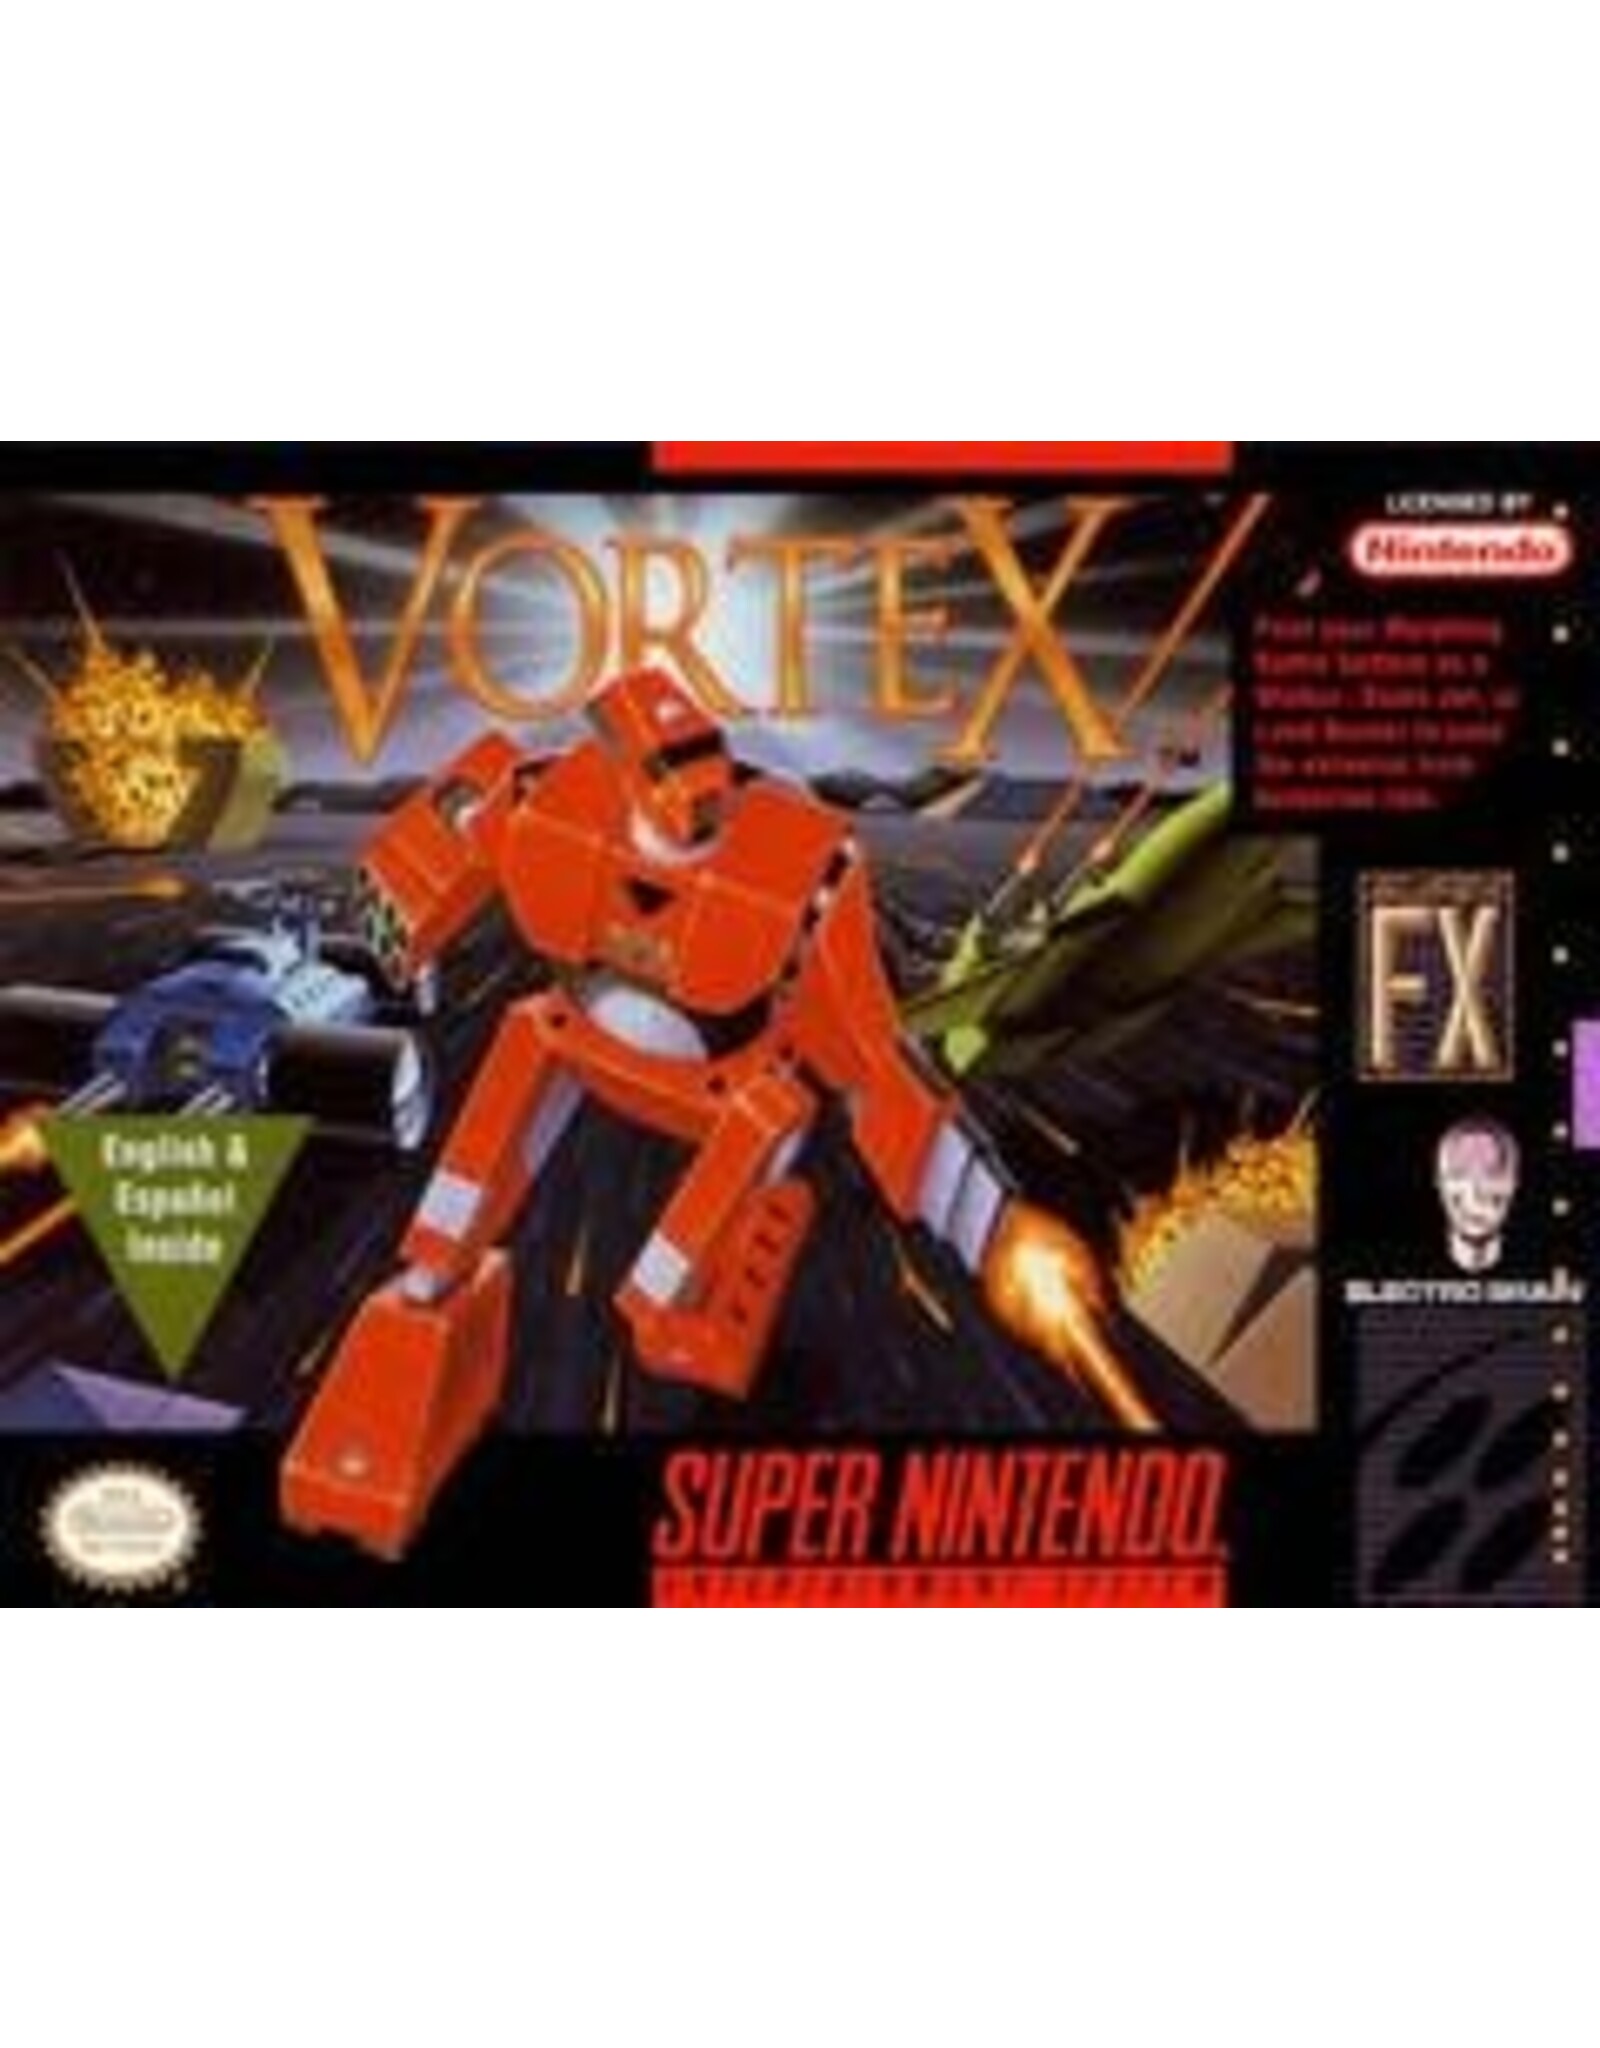 Super Nintendo Vortex (Cart Only)